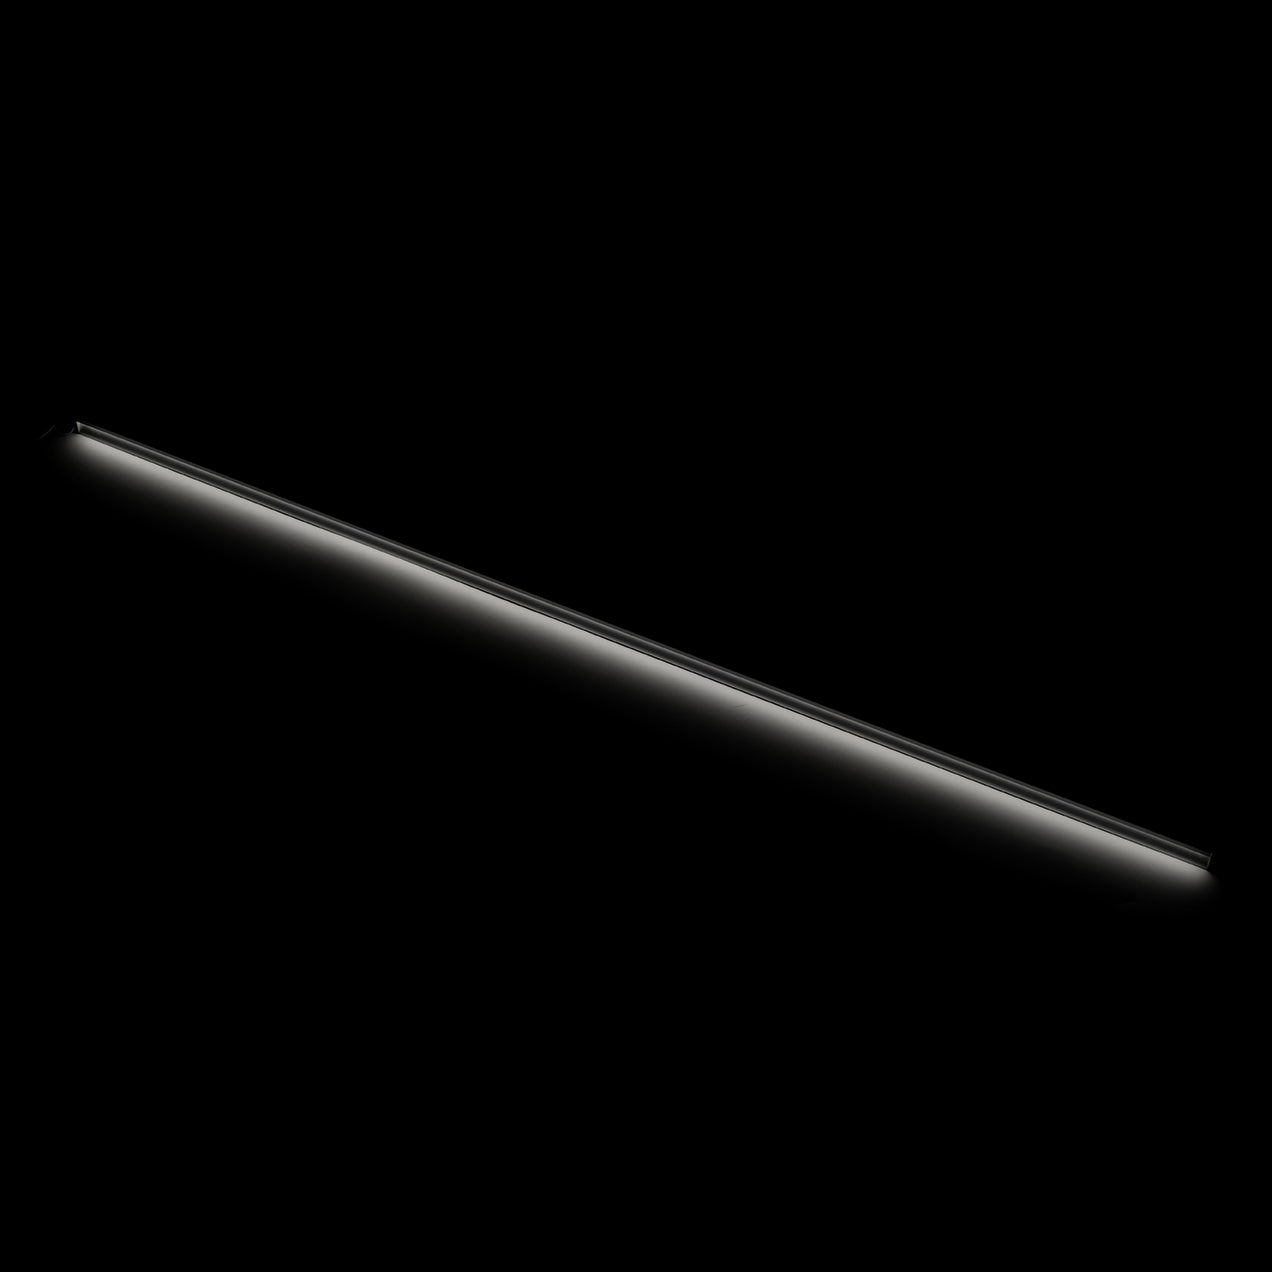 high-cri-led-linear-light-bar-24v-dc-118lm-ft